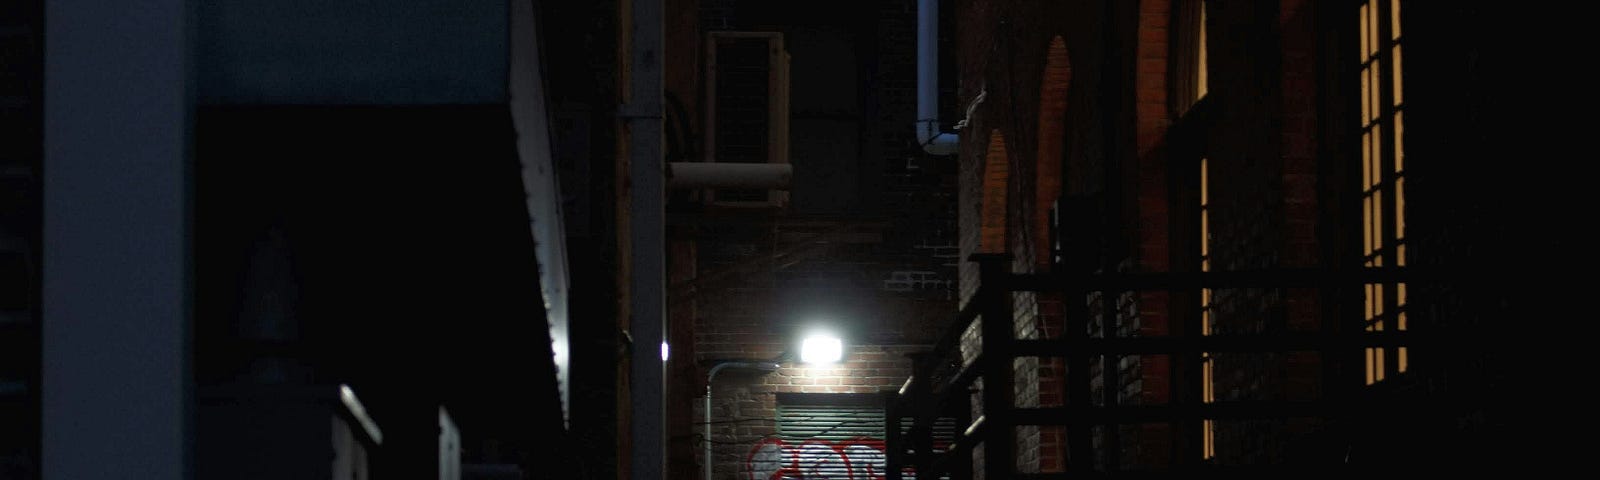 A dark alley